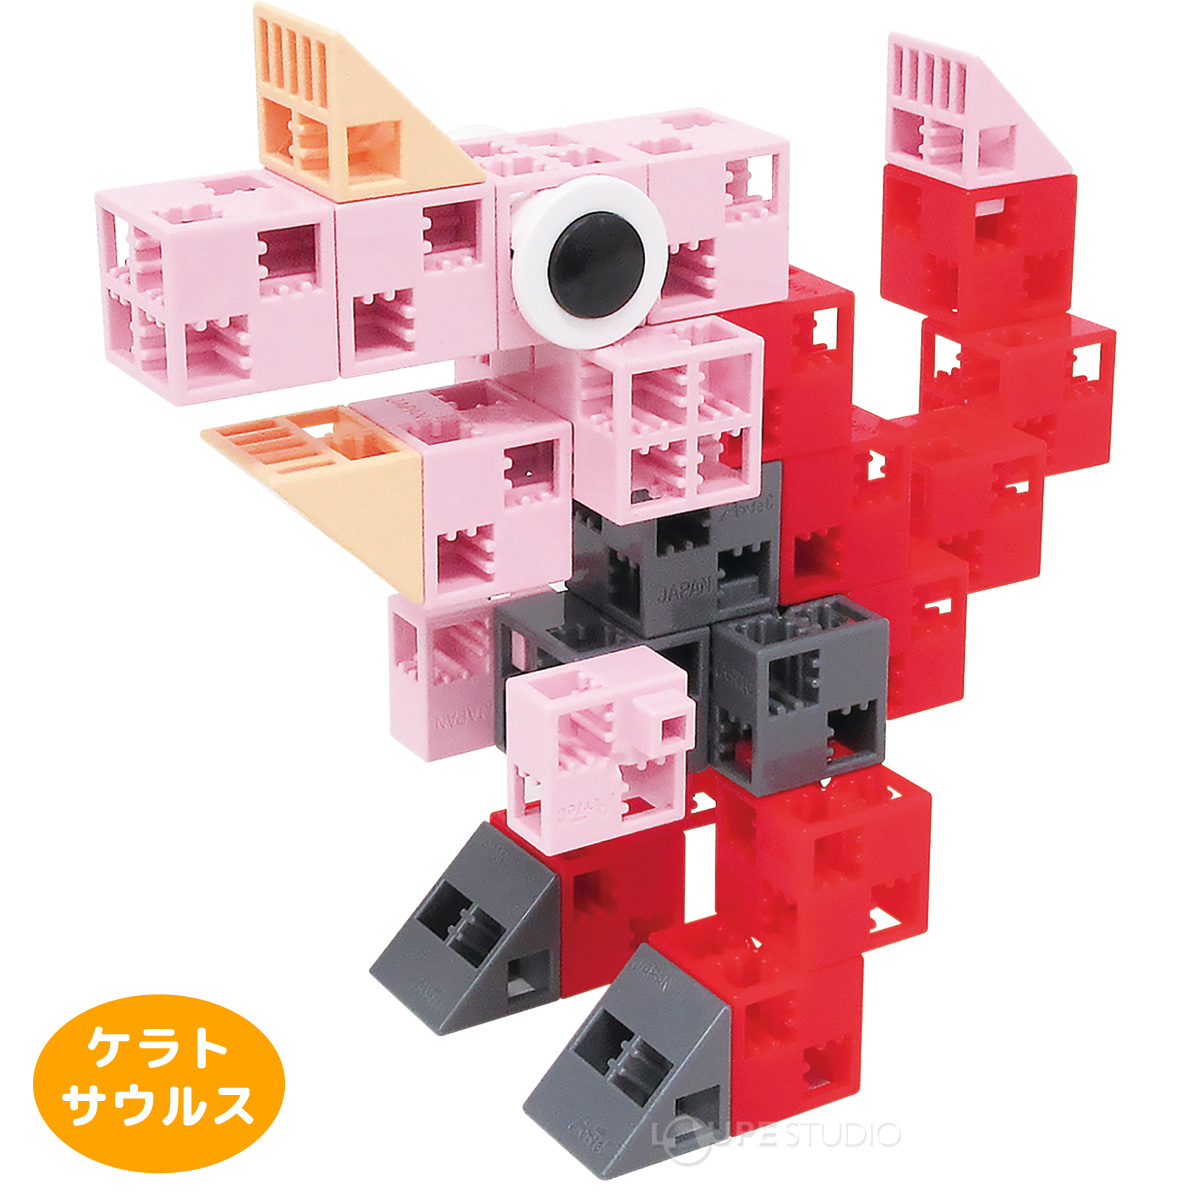 アーテックブロック きょうりゅう 恐竜 30ピース 袋入 キッズ 幼児 パズル ゲーム 工作 おもちゃ レゴ・レゴブロックのように遊べます